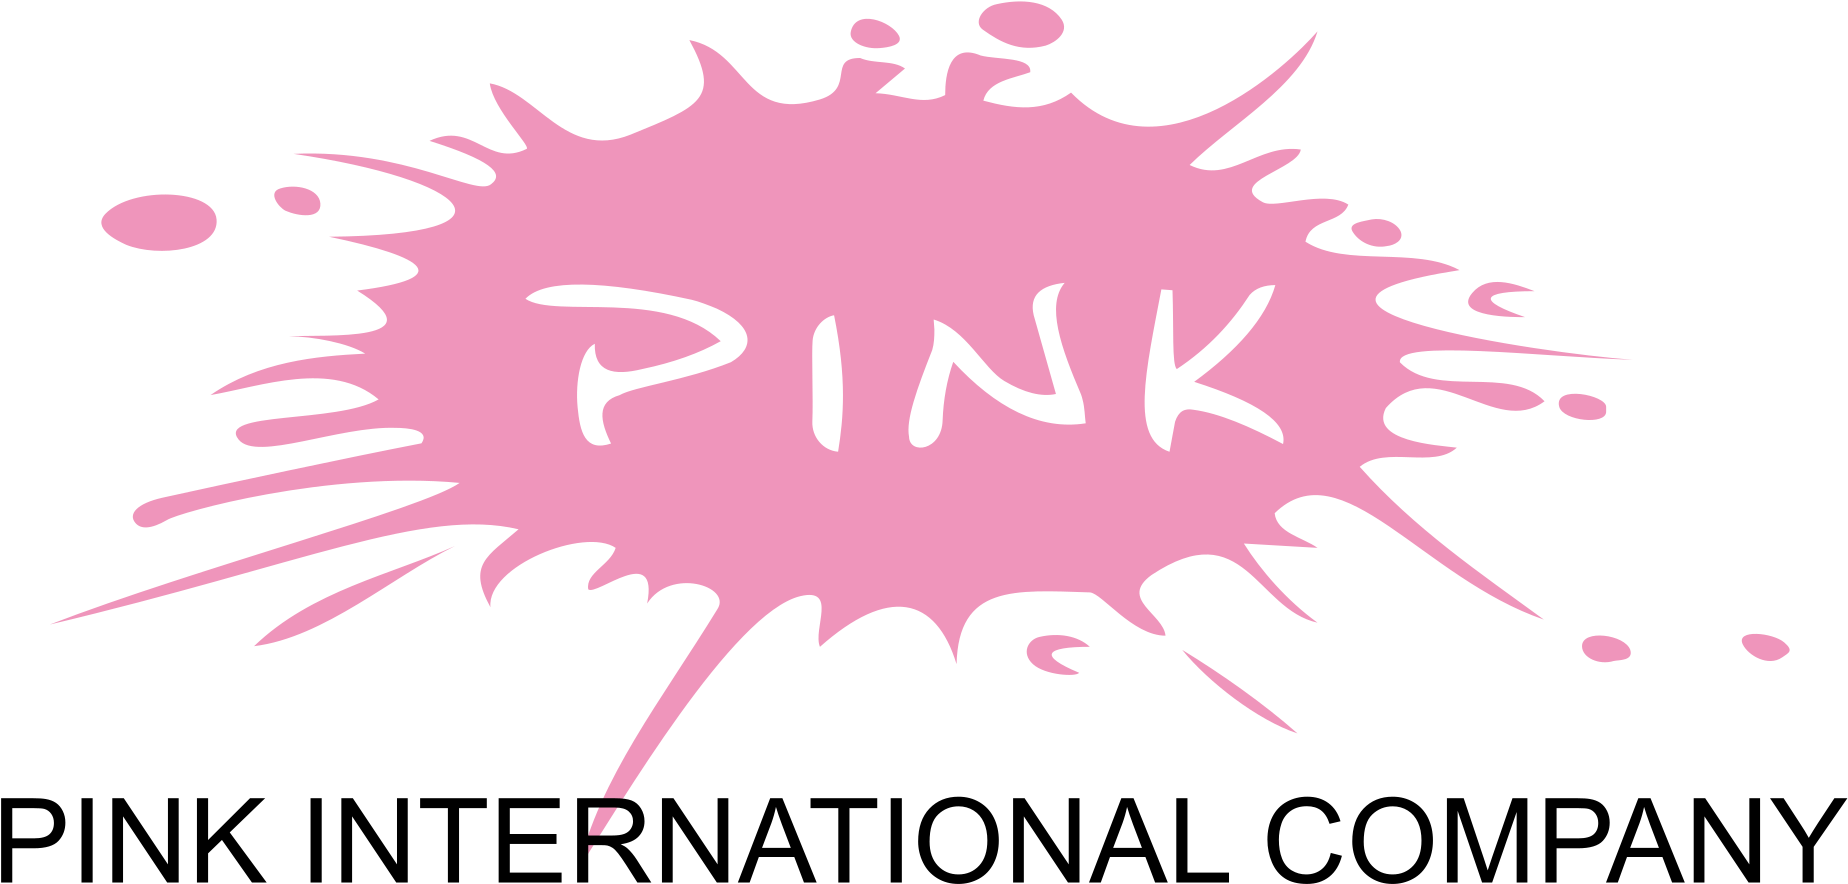 Free Free 87 Victoria Secret Pink Svg Free SVG PNG EPS DXF File